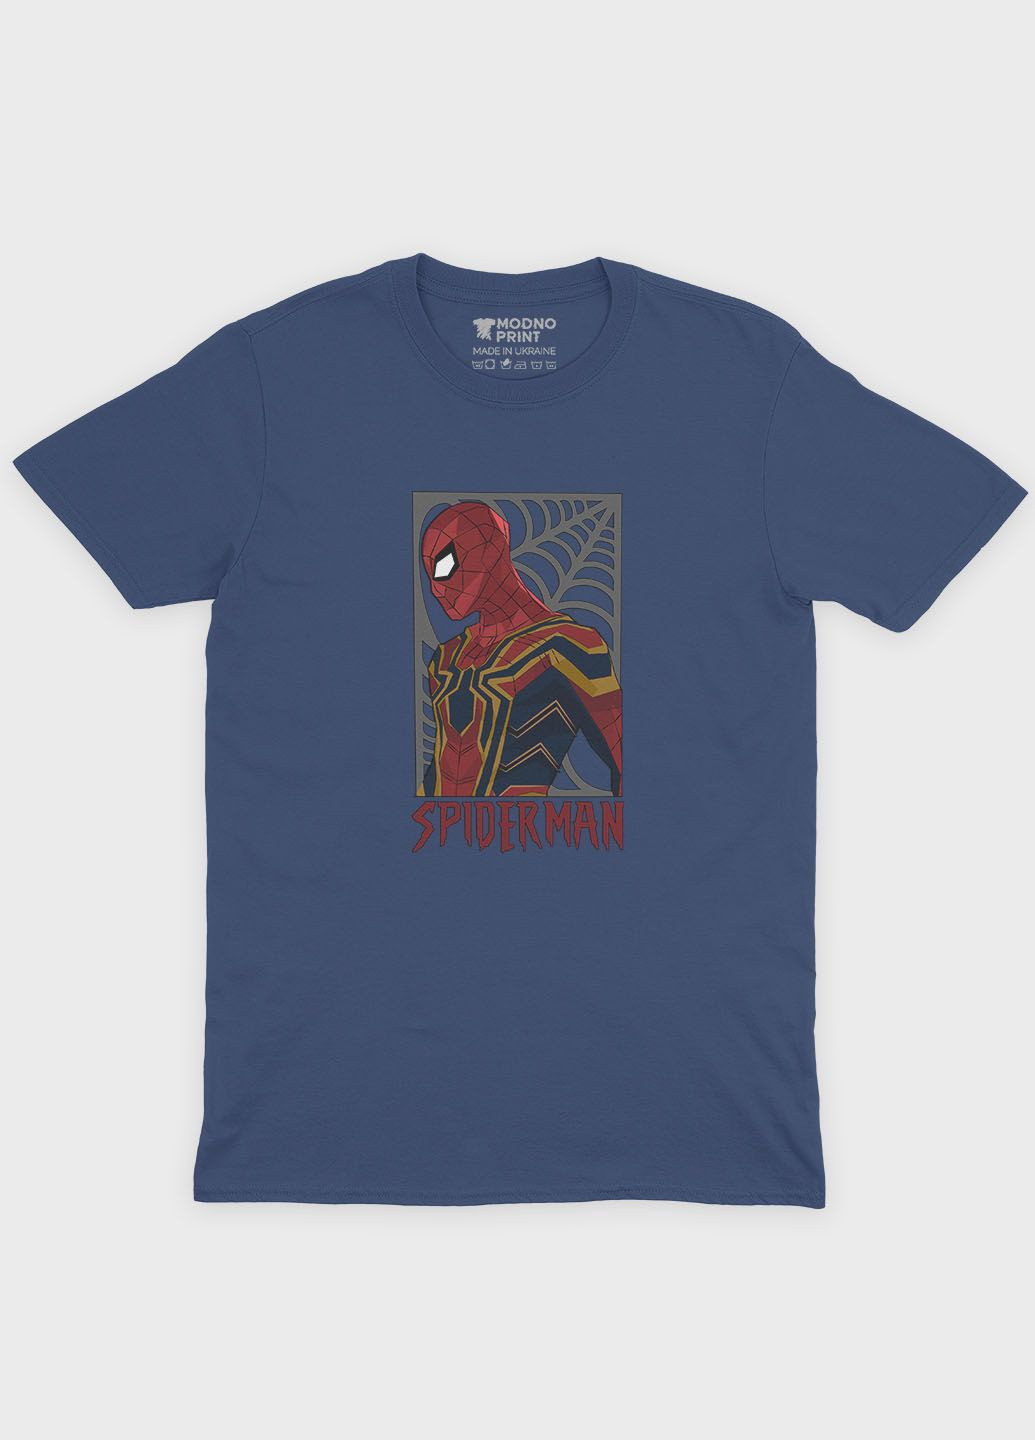 Темно-синяя демисезонная футболка для мальчика с принтом супергероя - человек-паук (ts001-1-nav-006-014-048-b) Modno